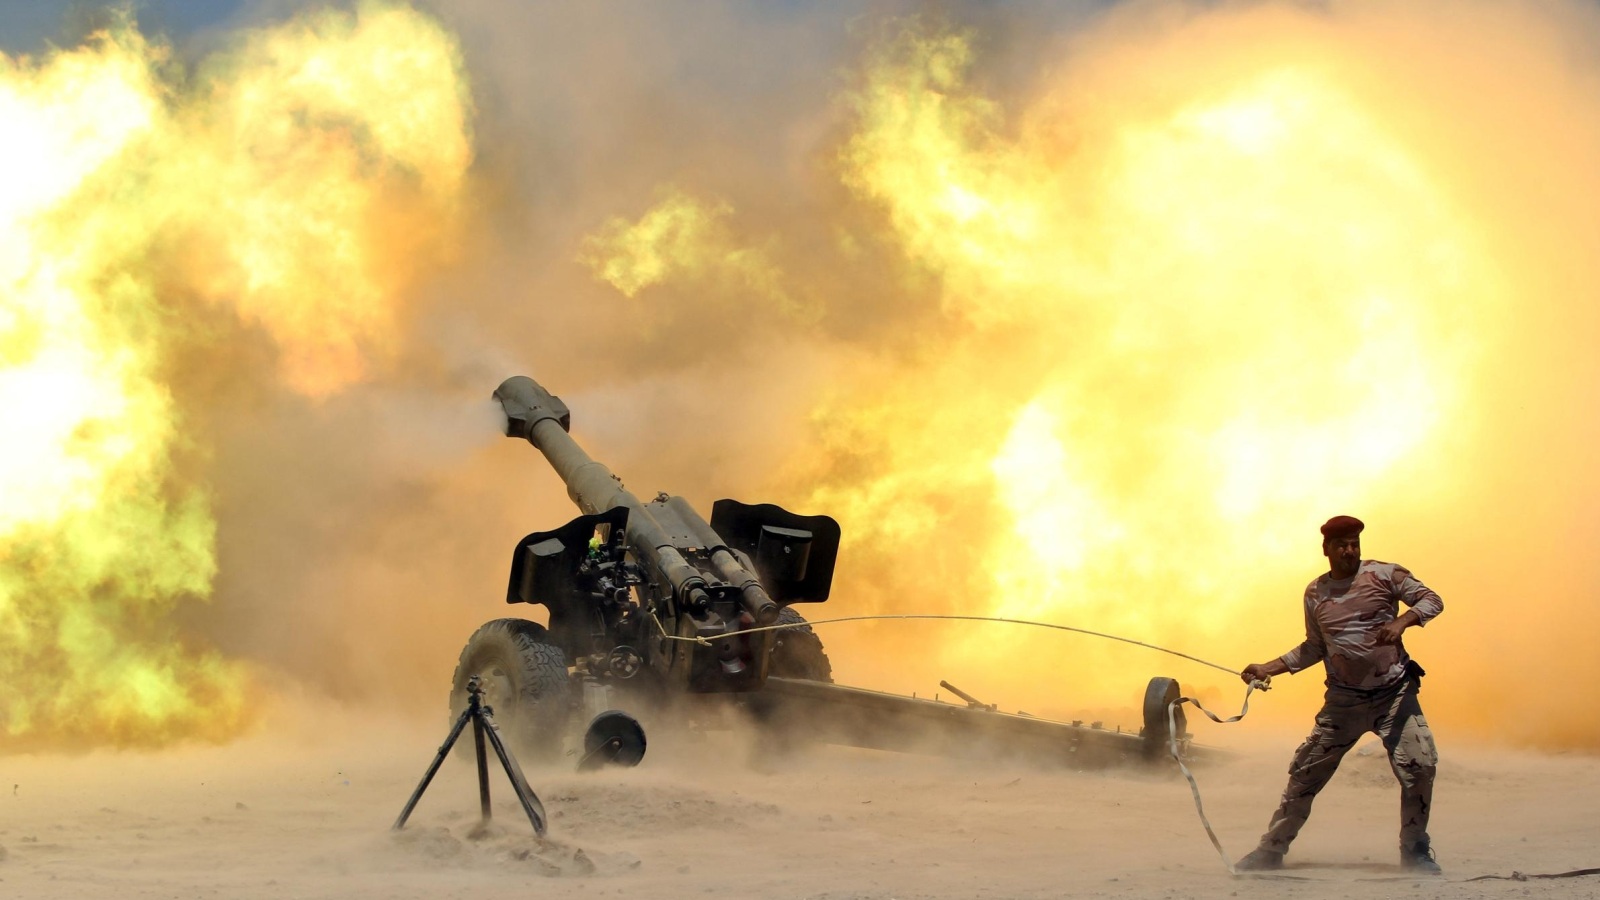 ‪أحد أفراد القوات العراقية يطلق قذائف مدفعية أثناء الاشتباك مع تنظيم الدولة قرب الفلوجة منتصف 2016‬ (رويترز)